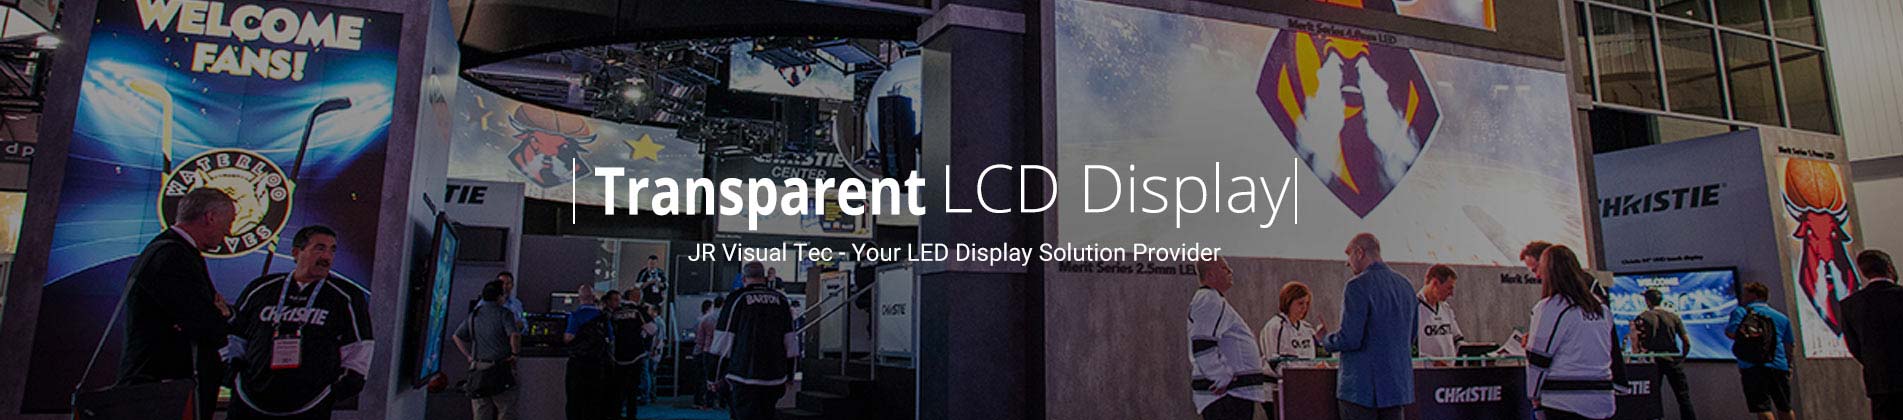 transparent lcd display